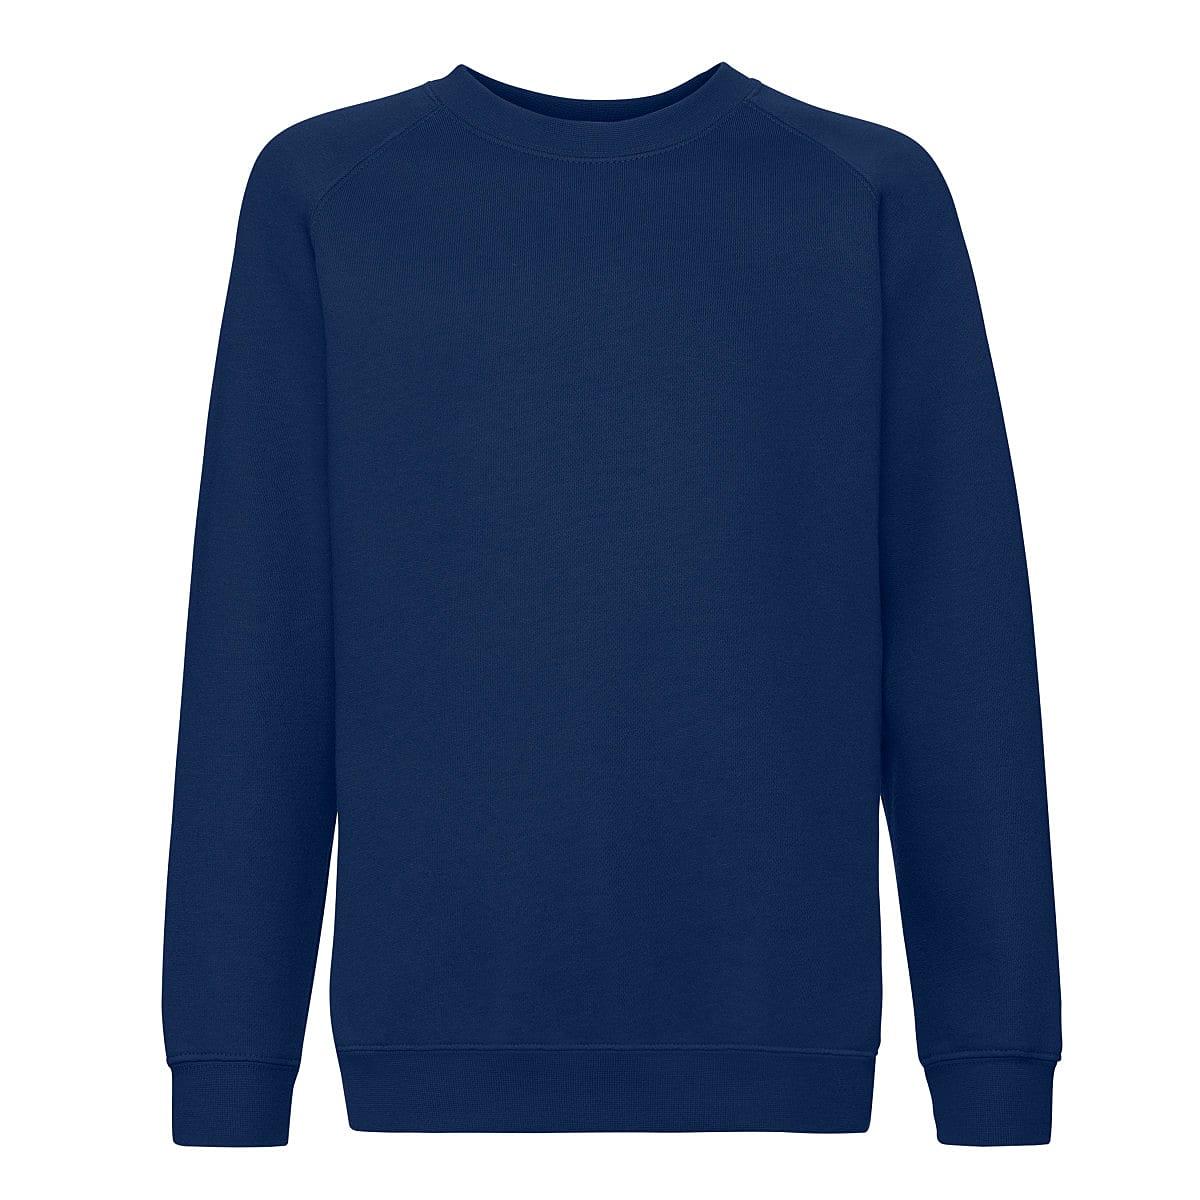 Fruit Of The Loom Childrens Premium Raglan Sleeve Sweatshirt in Navy Blue (Product Code: 62033)